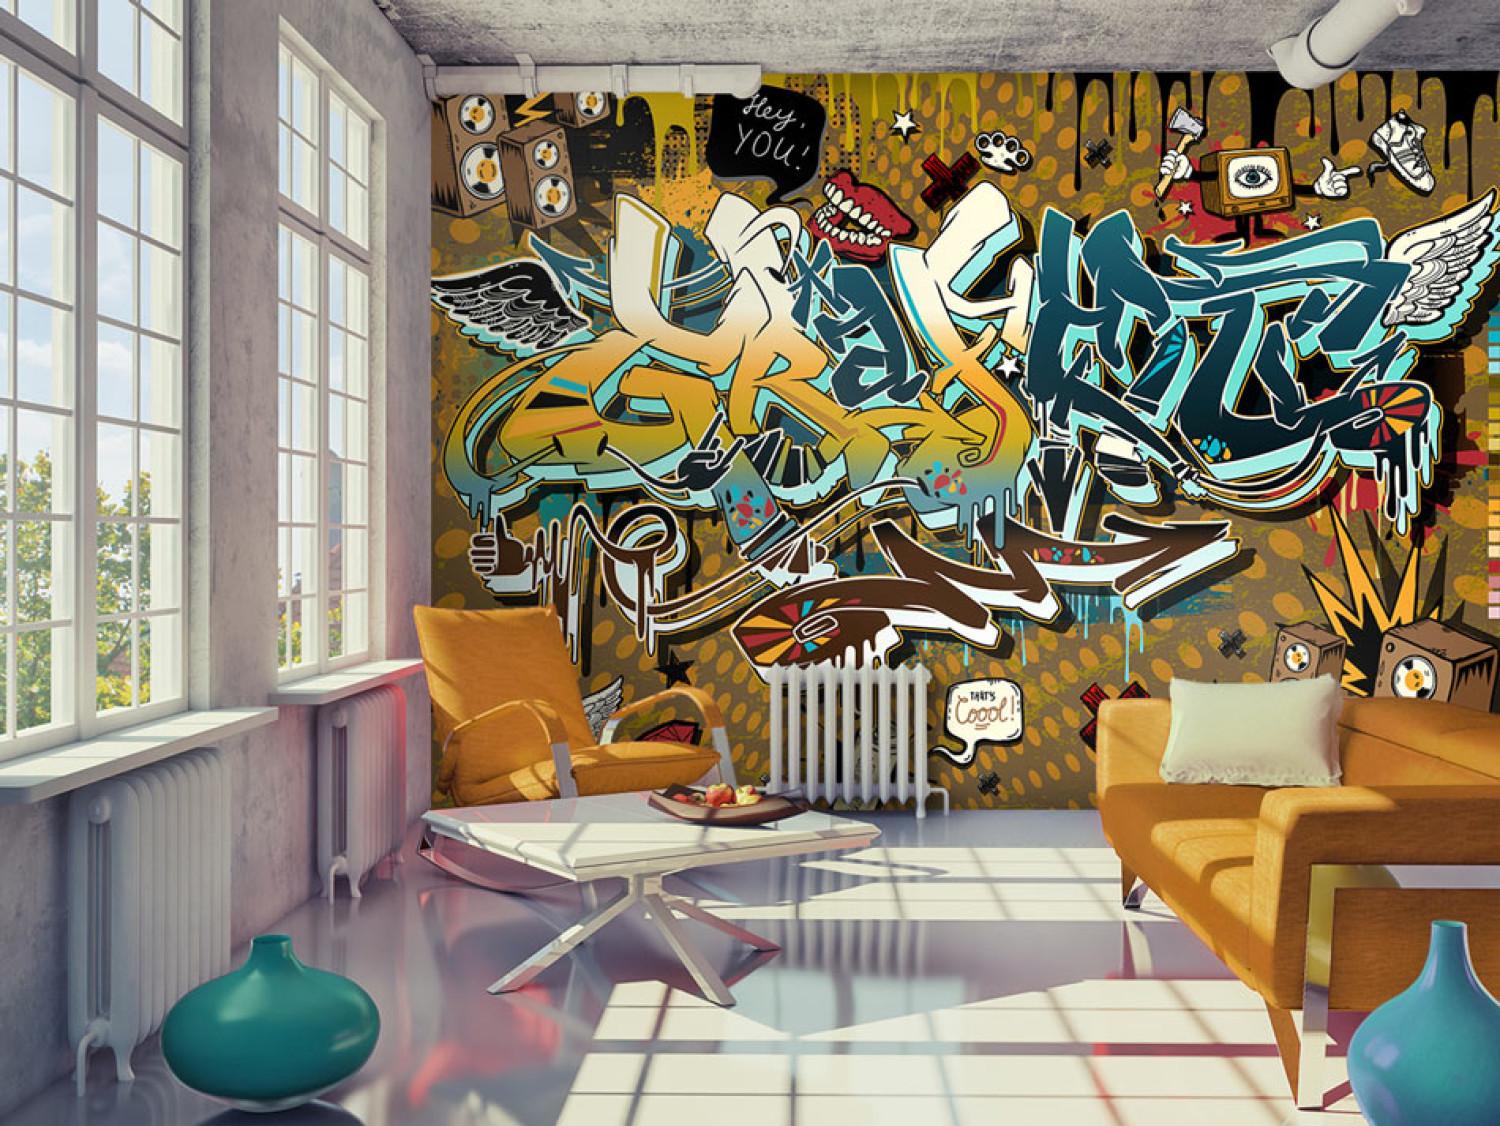 Fotomural a medida Cool! - mural con texto y dibujos coloridos, estilo de arte callejero